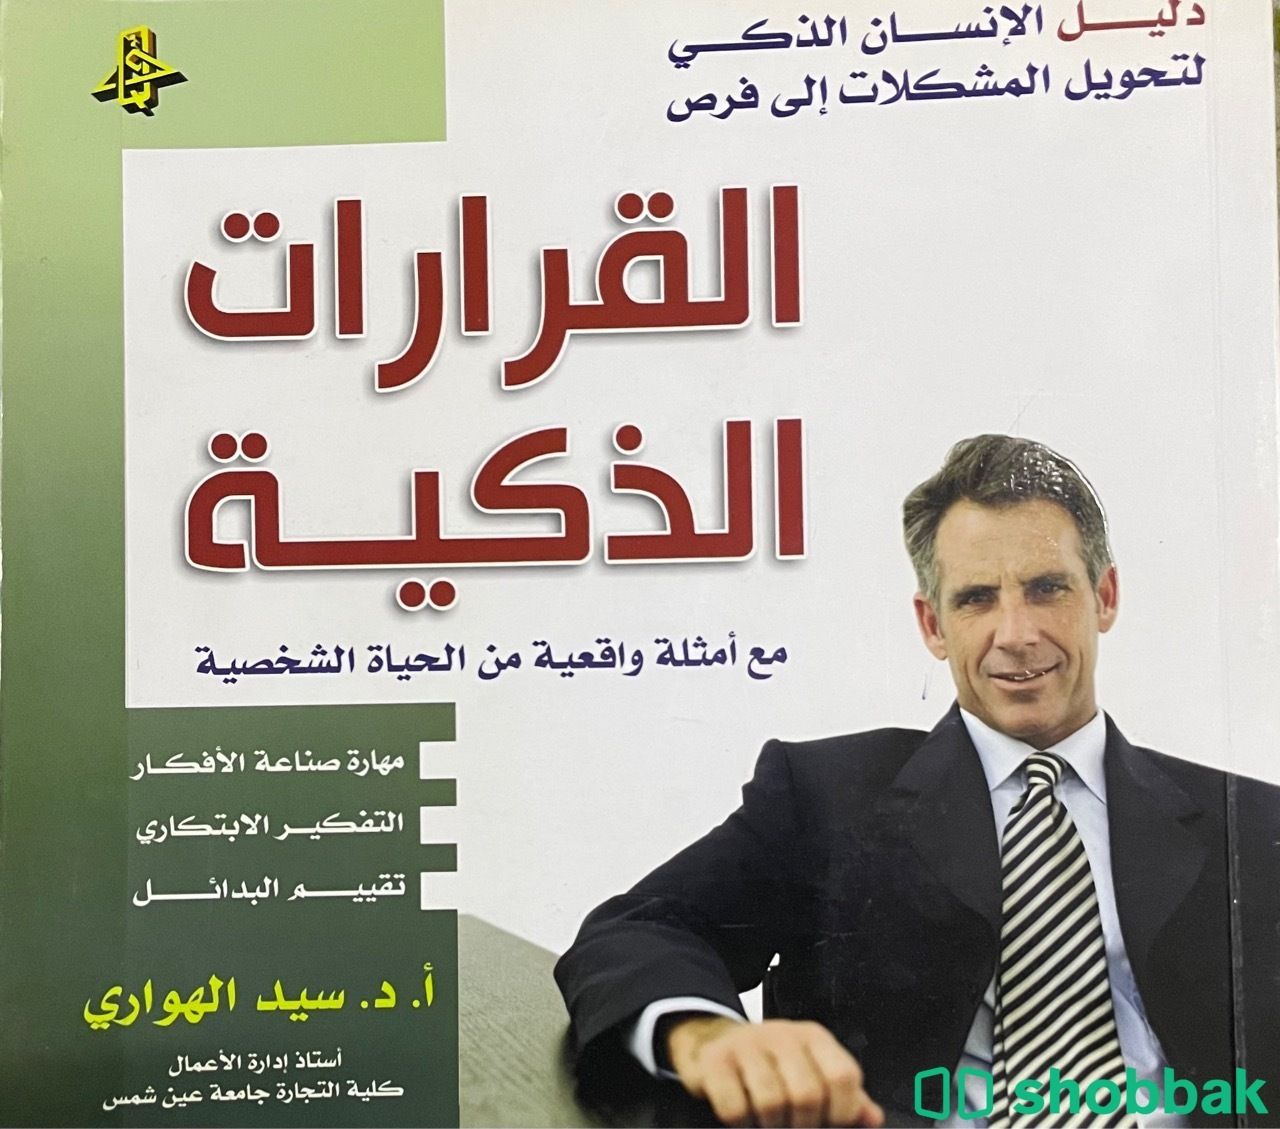 كتاب:القرارات الذكيه Shobbak Saudi Arabia